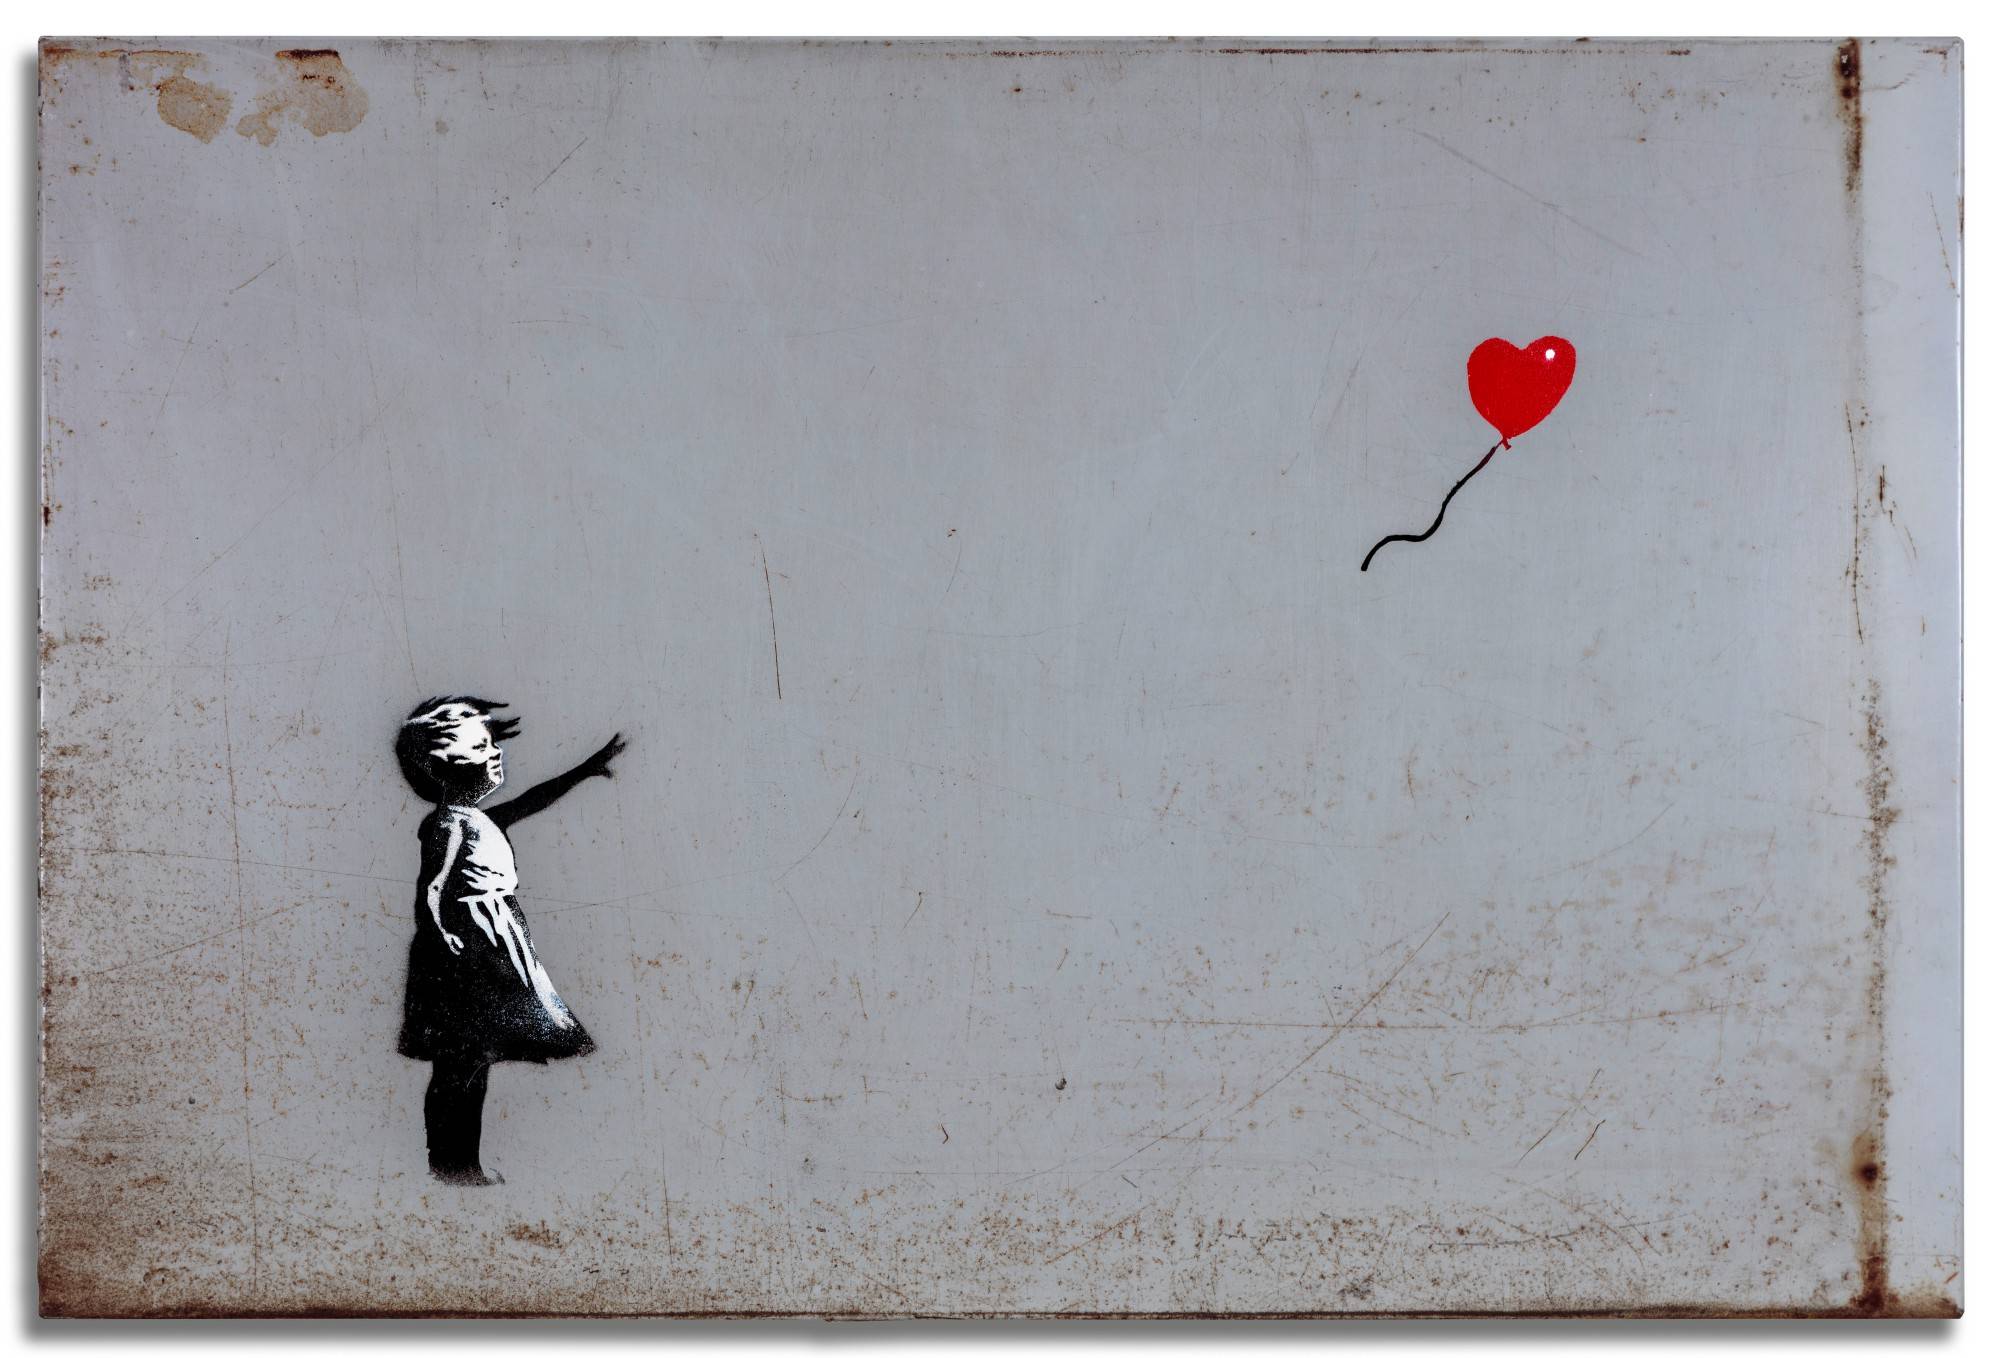 Girl with balloon, Banksy, peinture en spay sur métal, 60 cm sur 90 cm, 2006 ©️Courtesy Sotheby’s